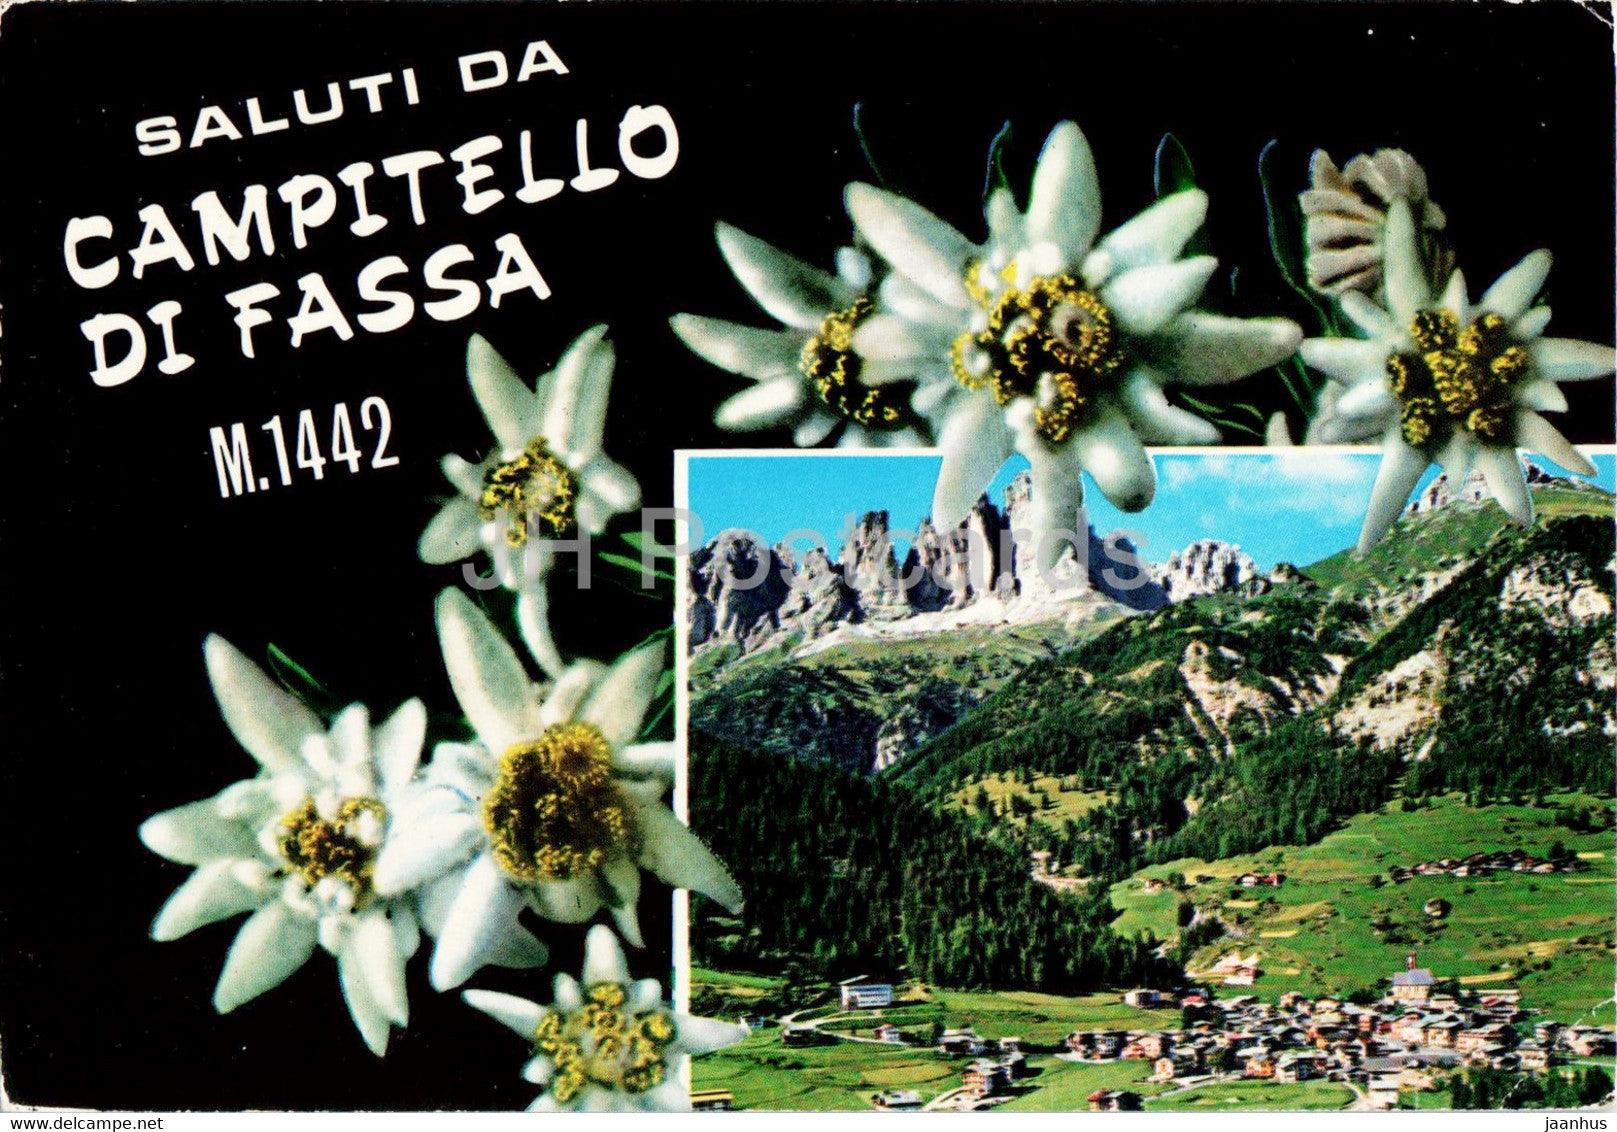 Saluti da Campitello di Fassa 1442 m - Edelweiss - flower  - 1977 - Italy - used - JH Postcards